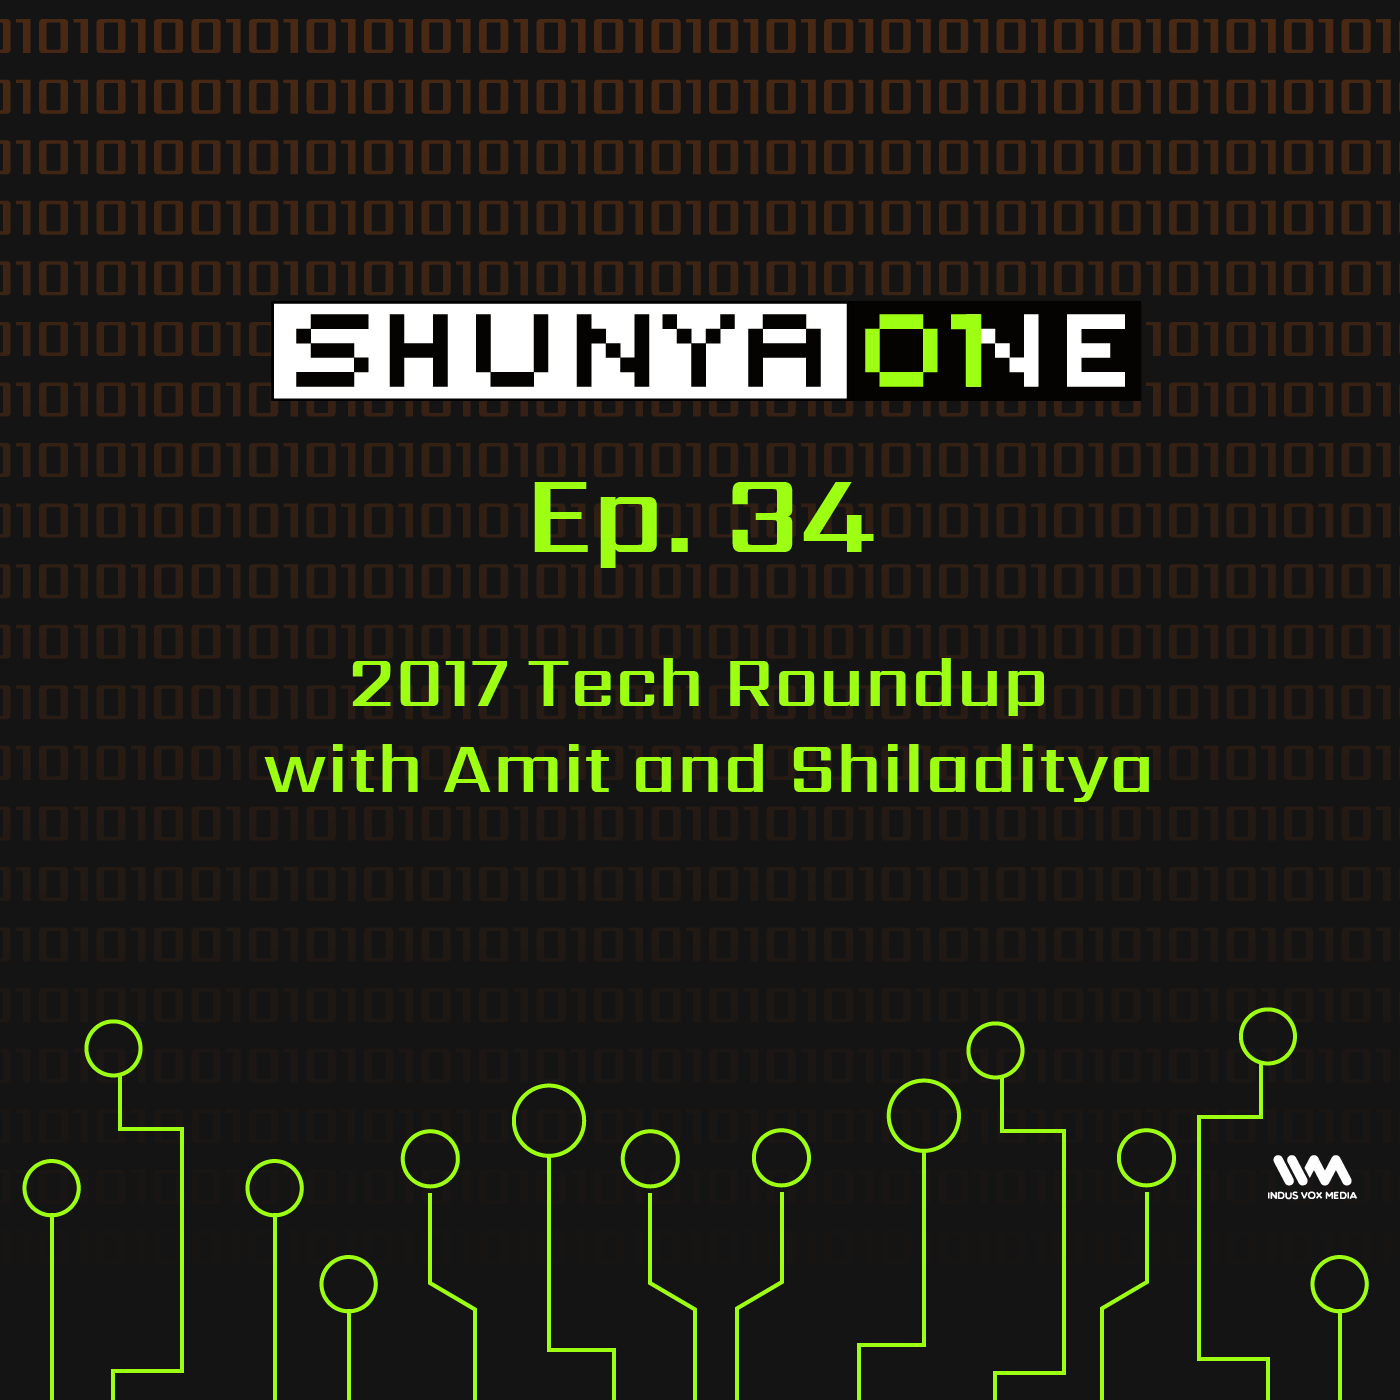 2017 Tech Roundup with Amit and Shiladitya